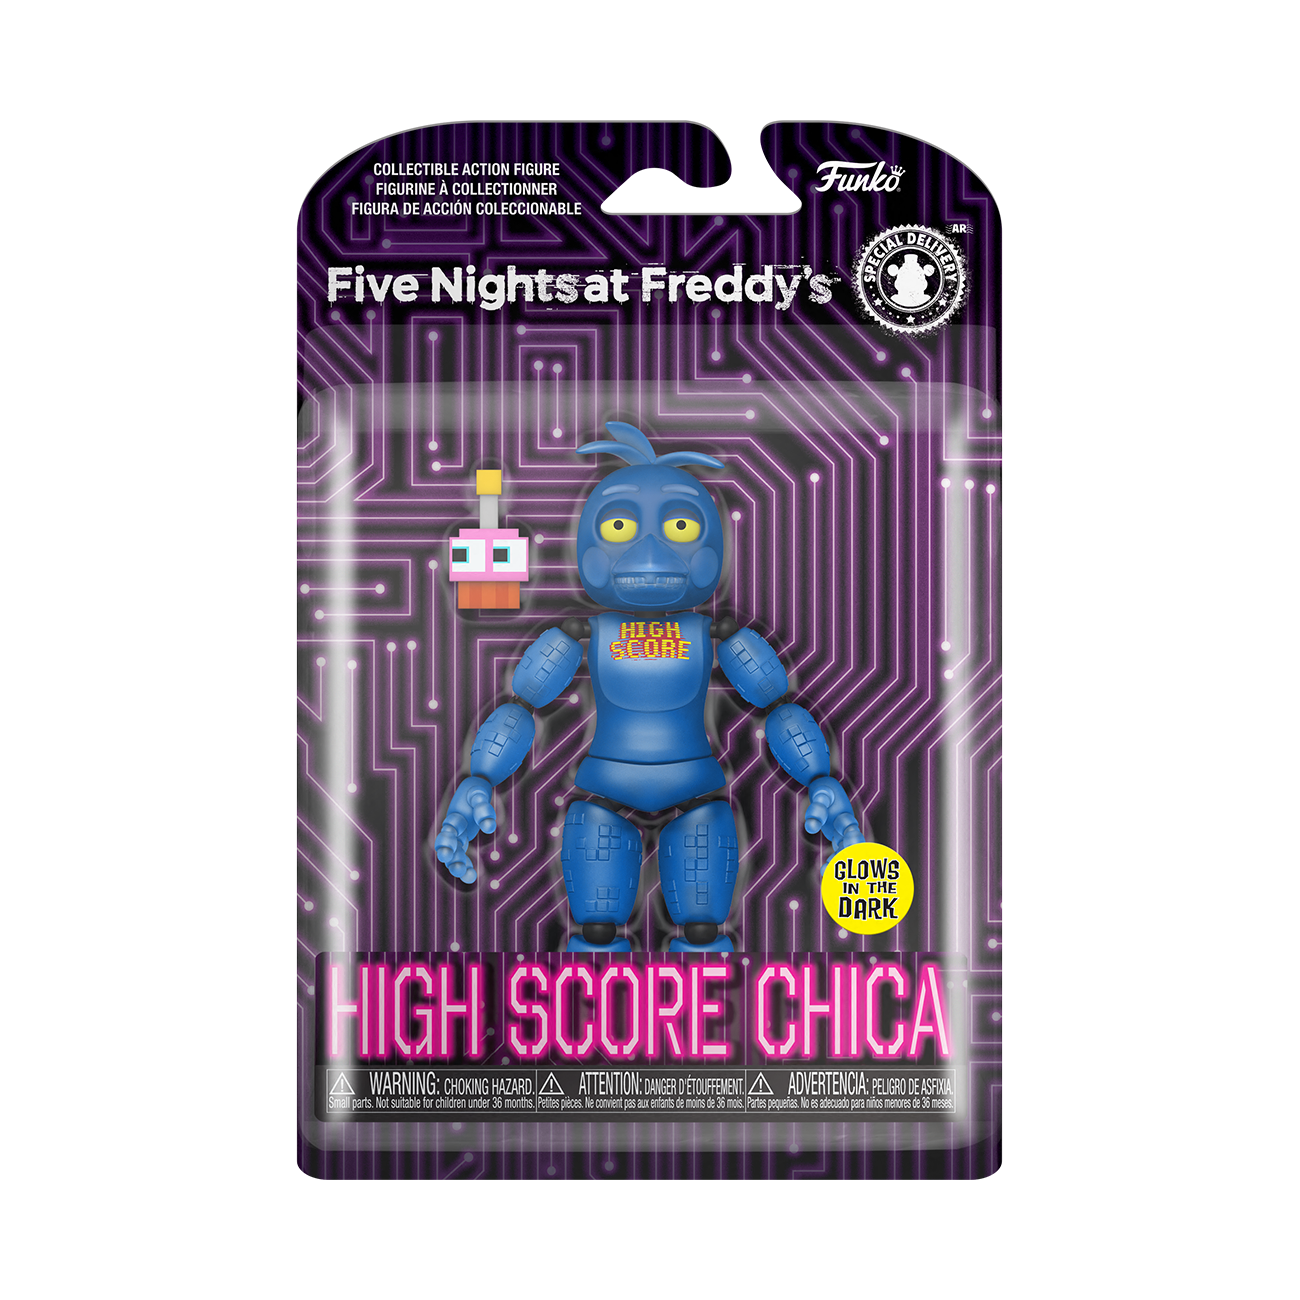 Funko Figura de Accion: Five Nights at Freddys - Chica High Score